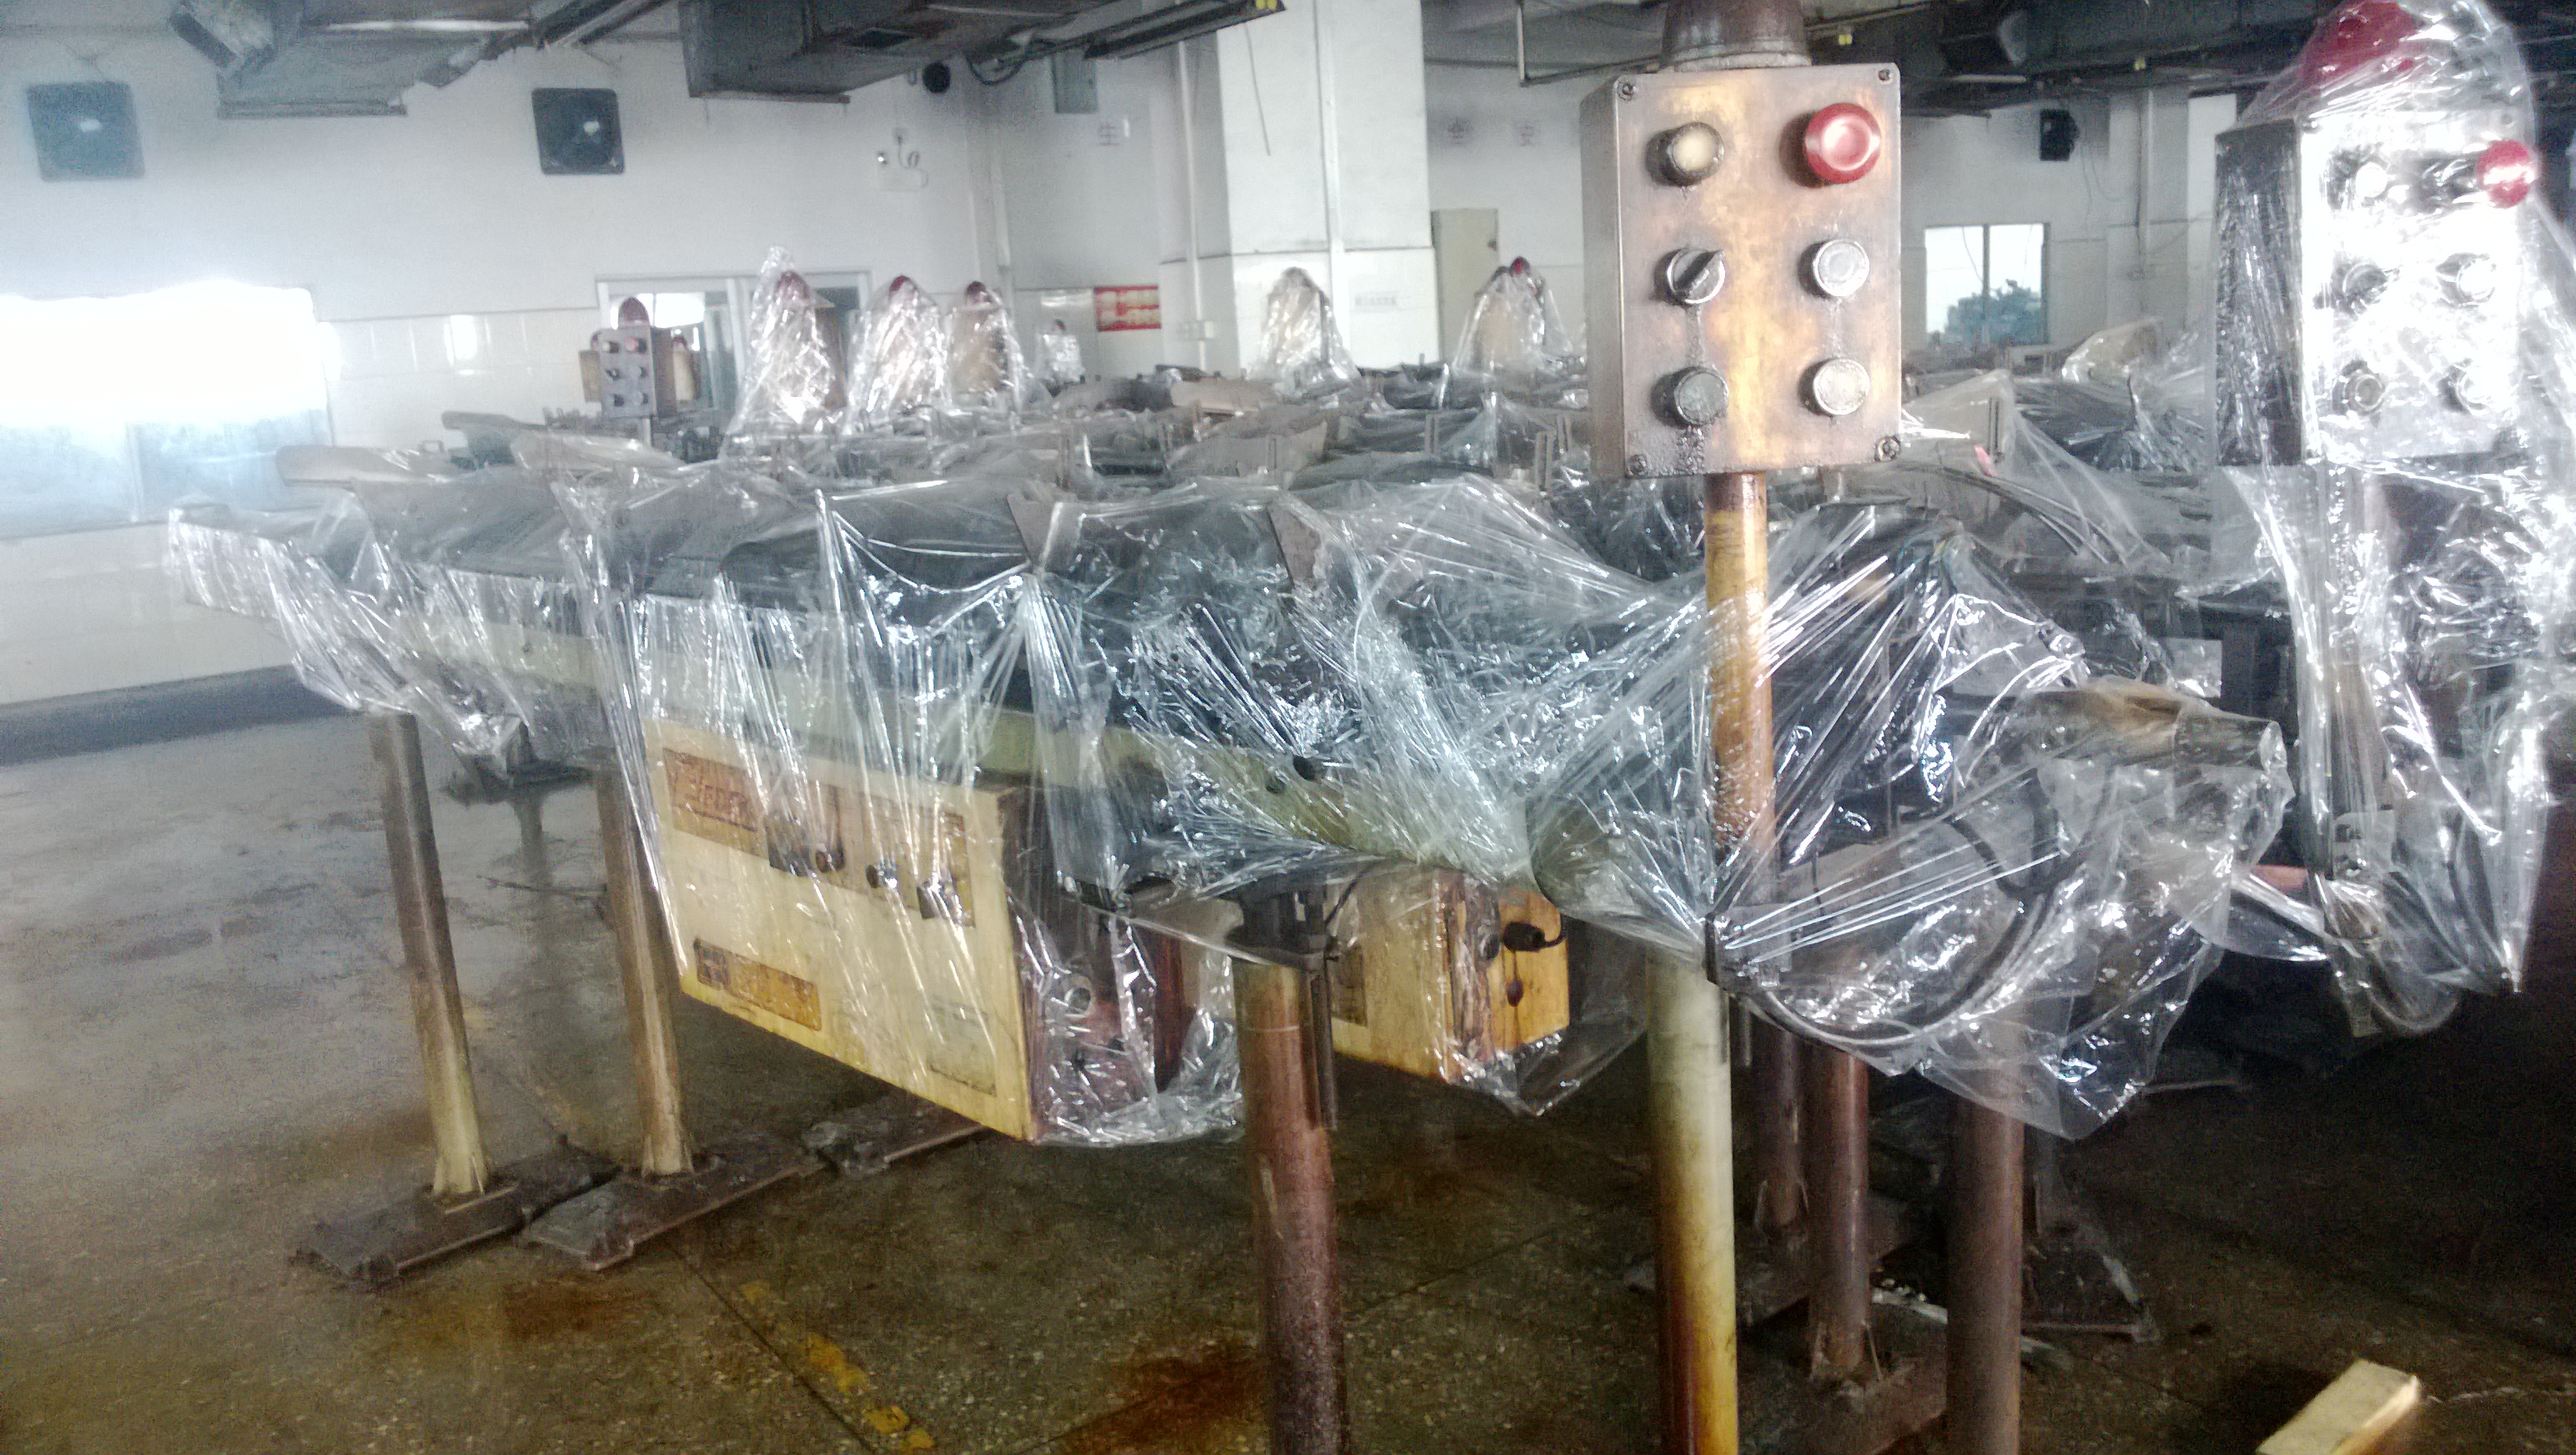 供应深圳宝安西乡龙岗坪地回收二手自动车床收购倒闭工厂设备